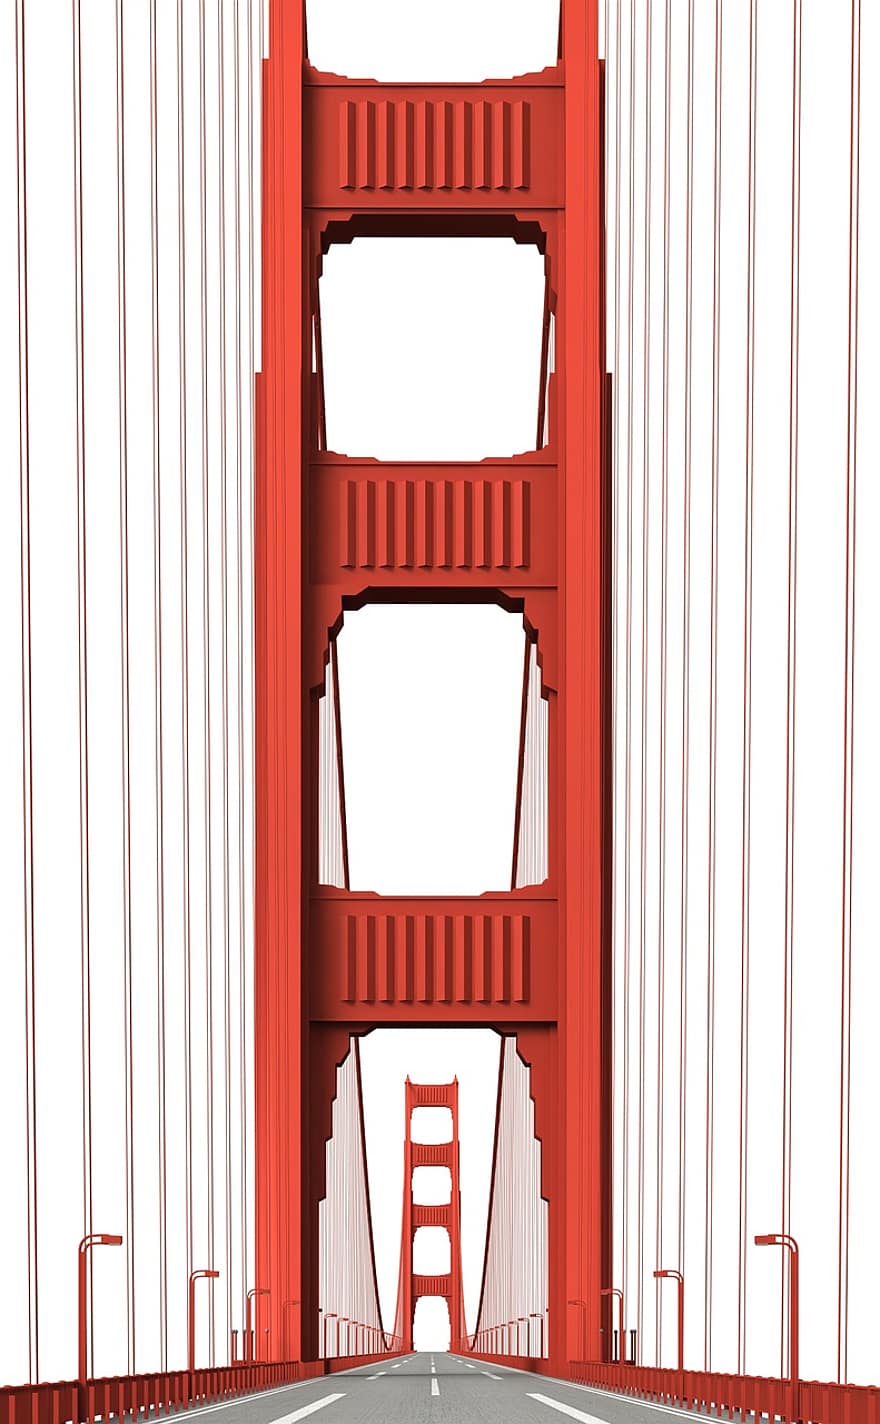 golden gate köprüsü, San Francisco, bina, kilise, ilgi alanları, tarihsel, turistler, cazibe, işaret, cephe, seyahat